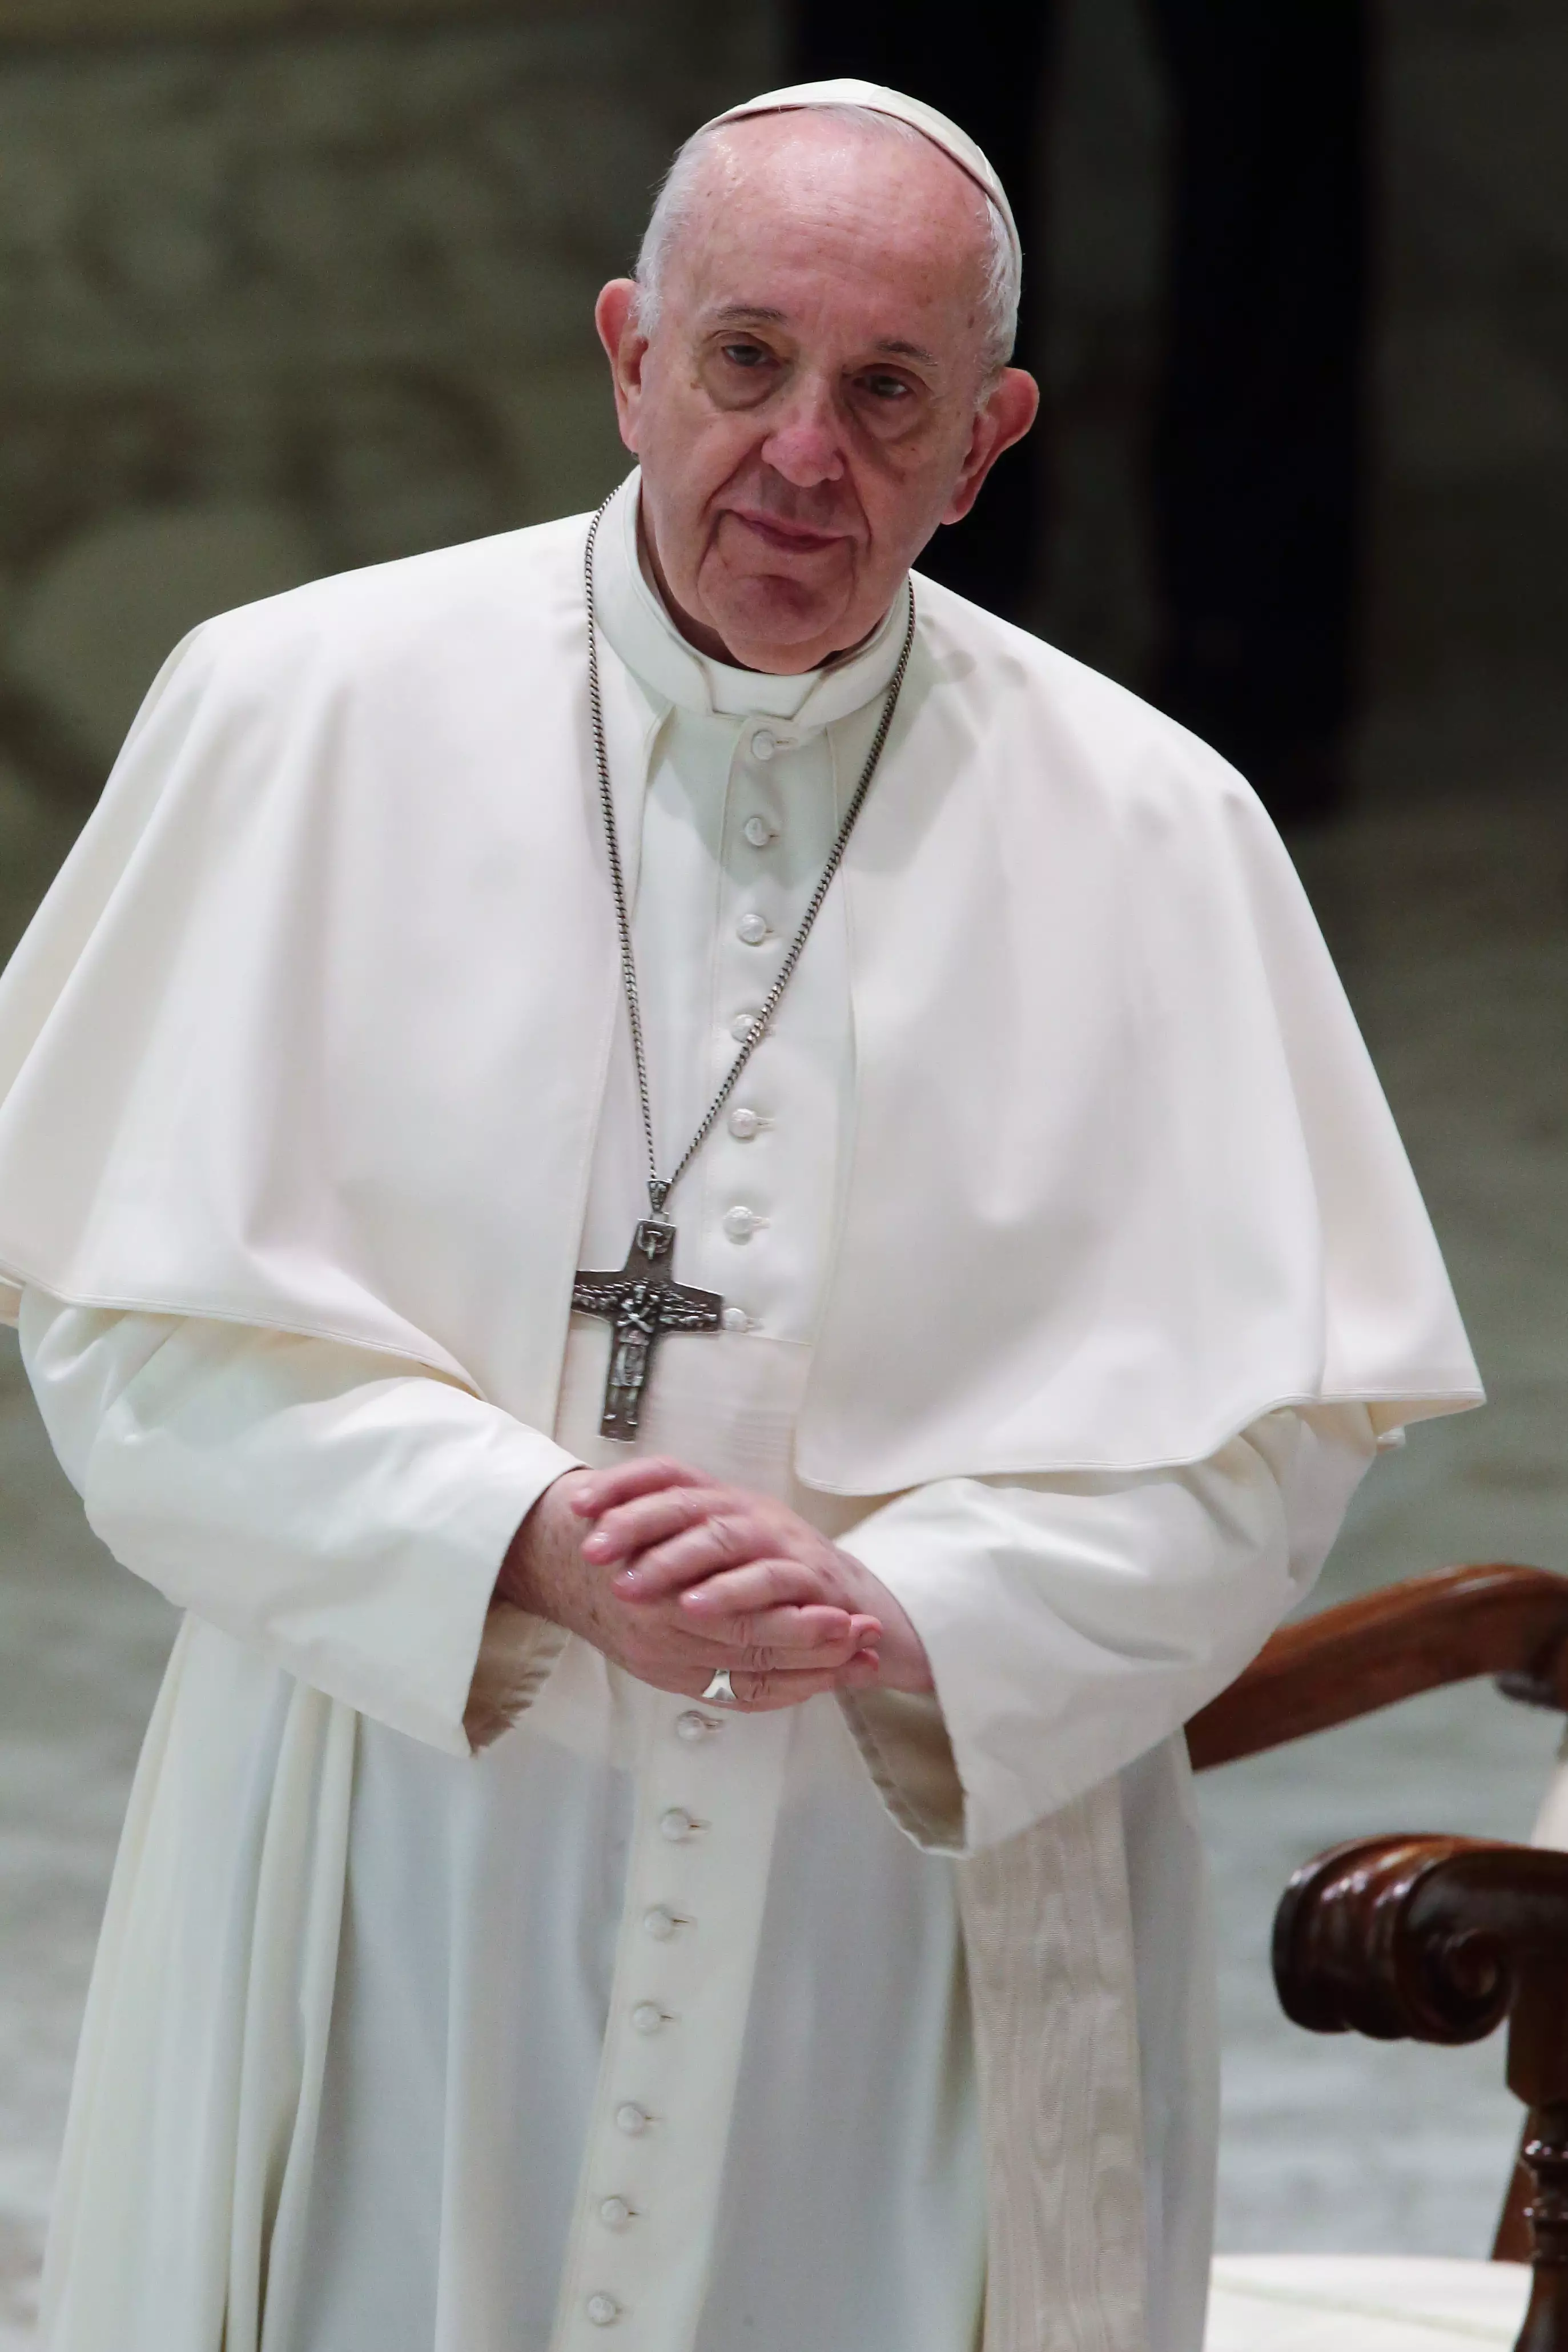 Pope Francis has endorsed civil unions (